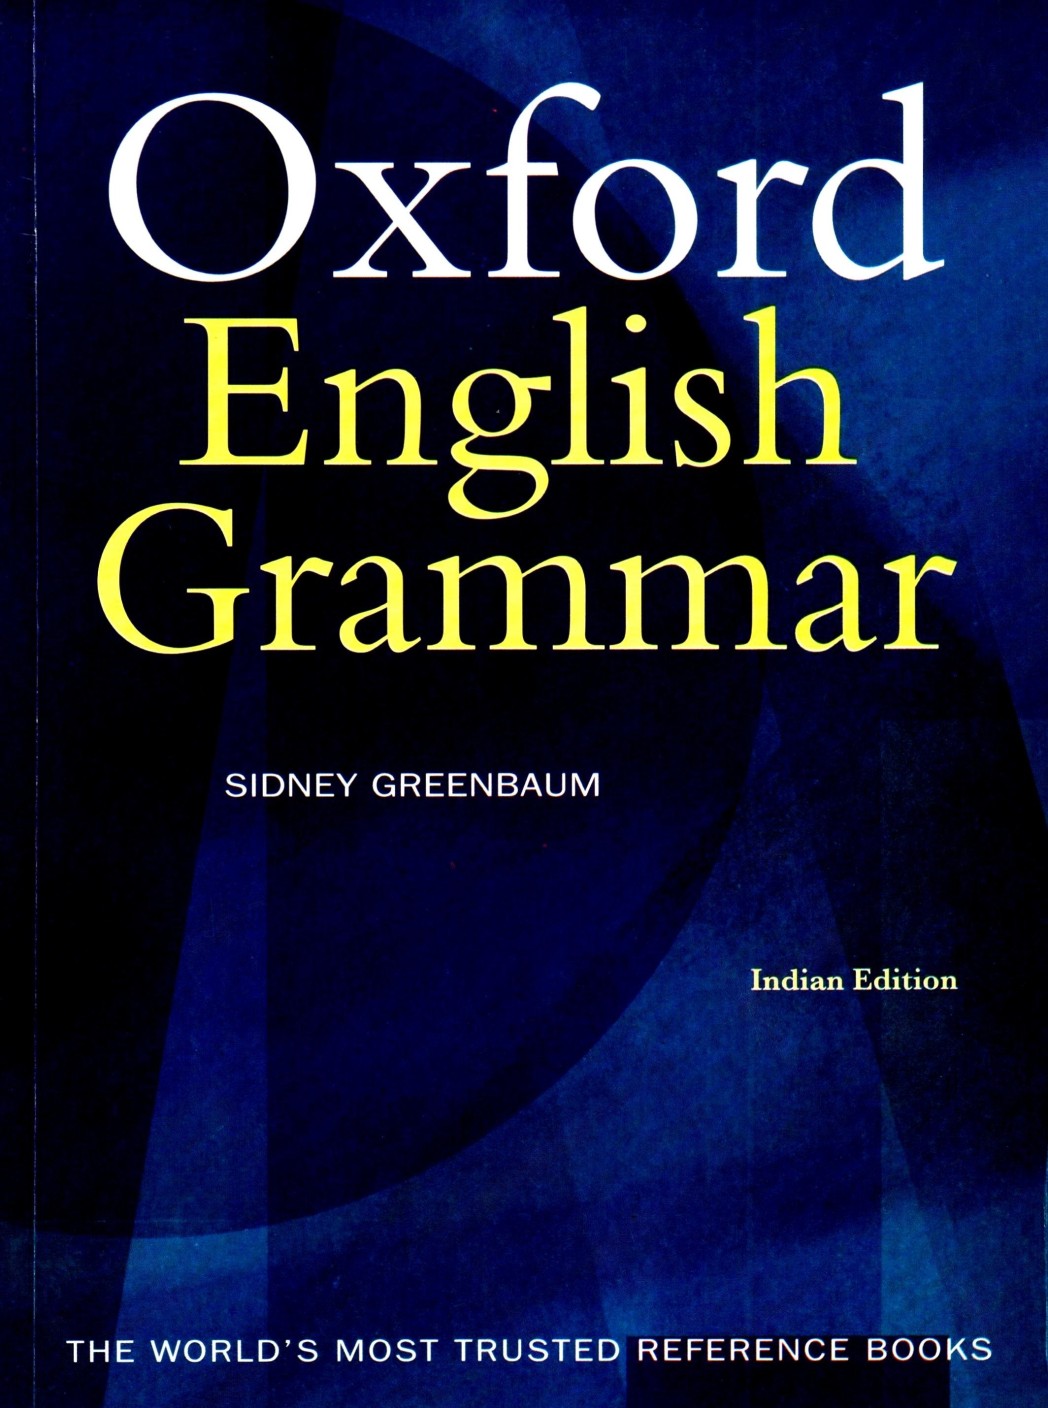 Oxford English Grammar 1st Edition - Buy Oxford English Grammar 1st